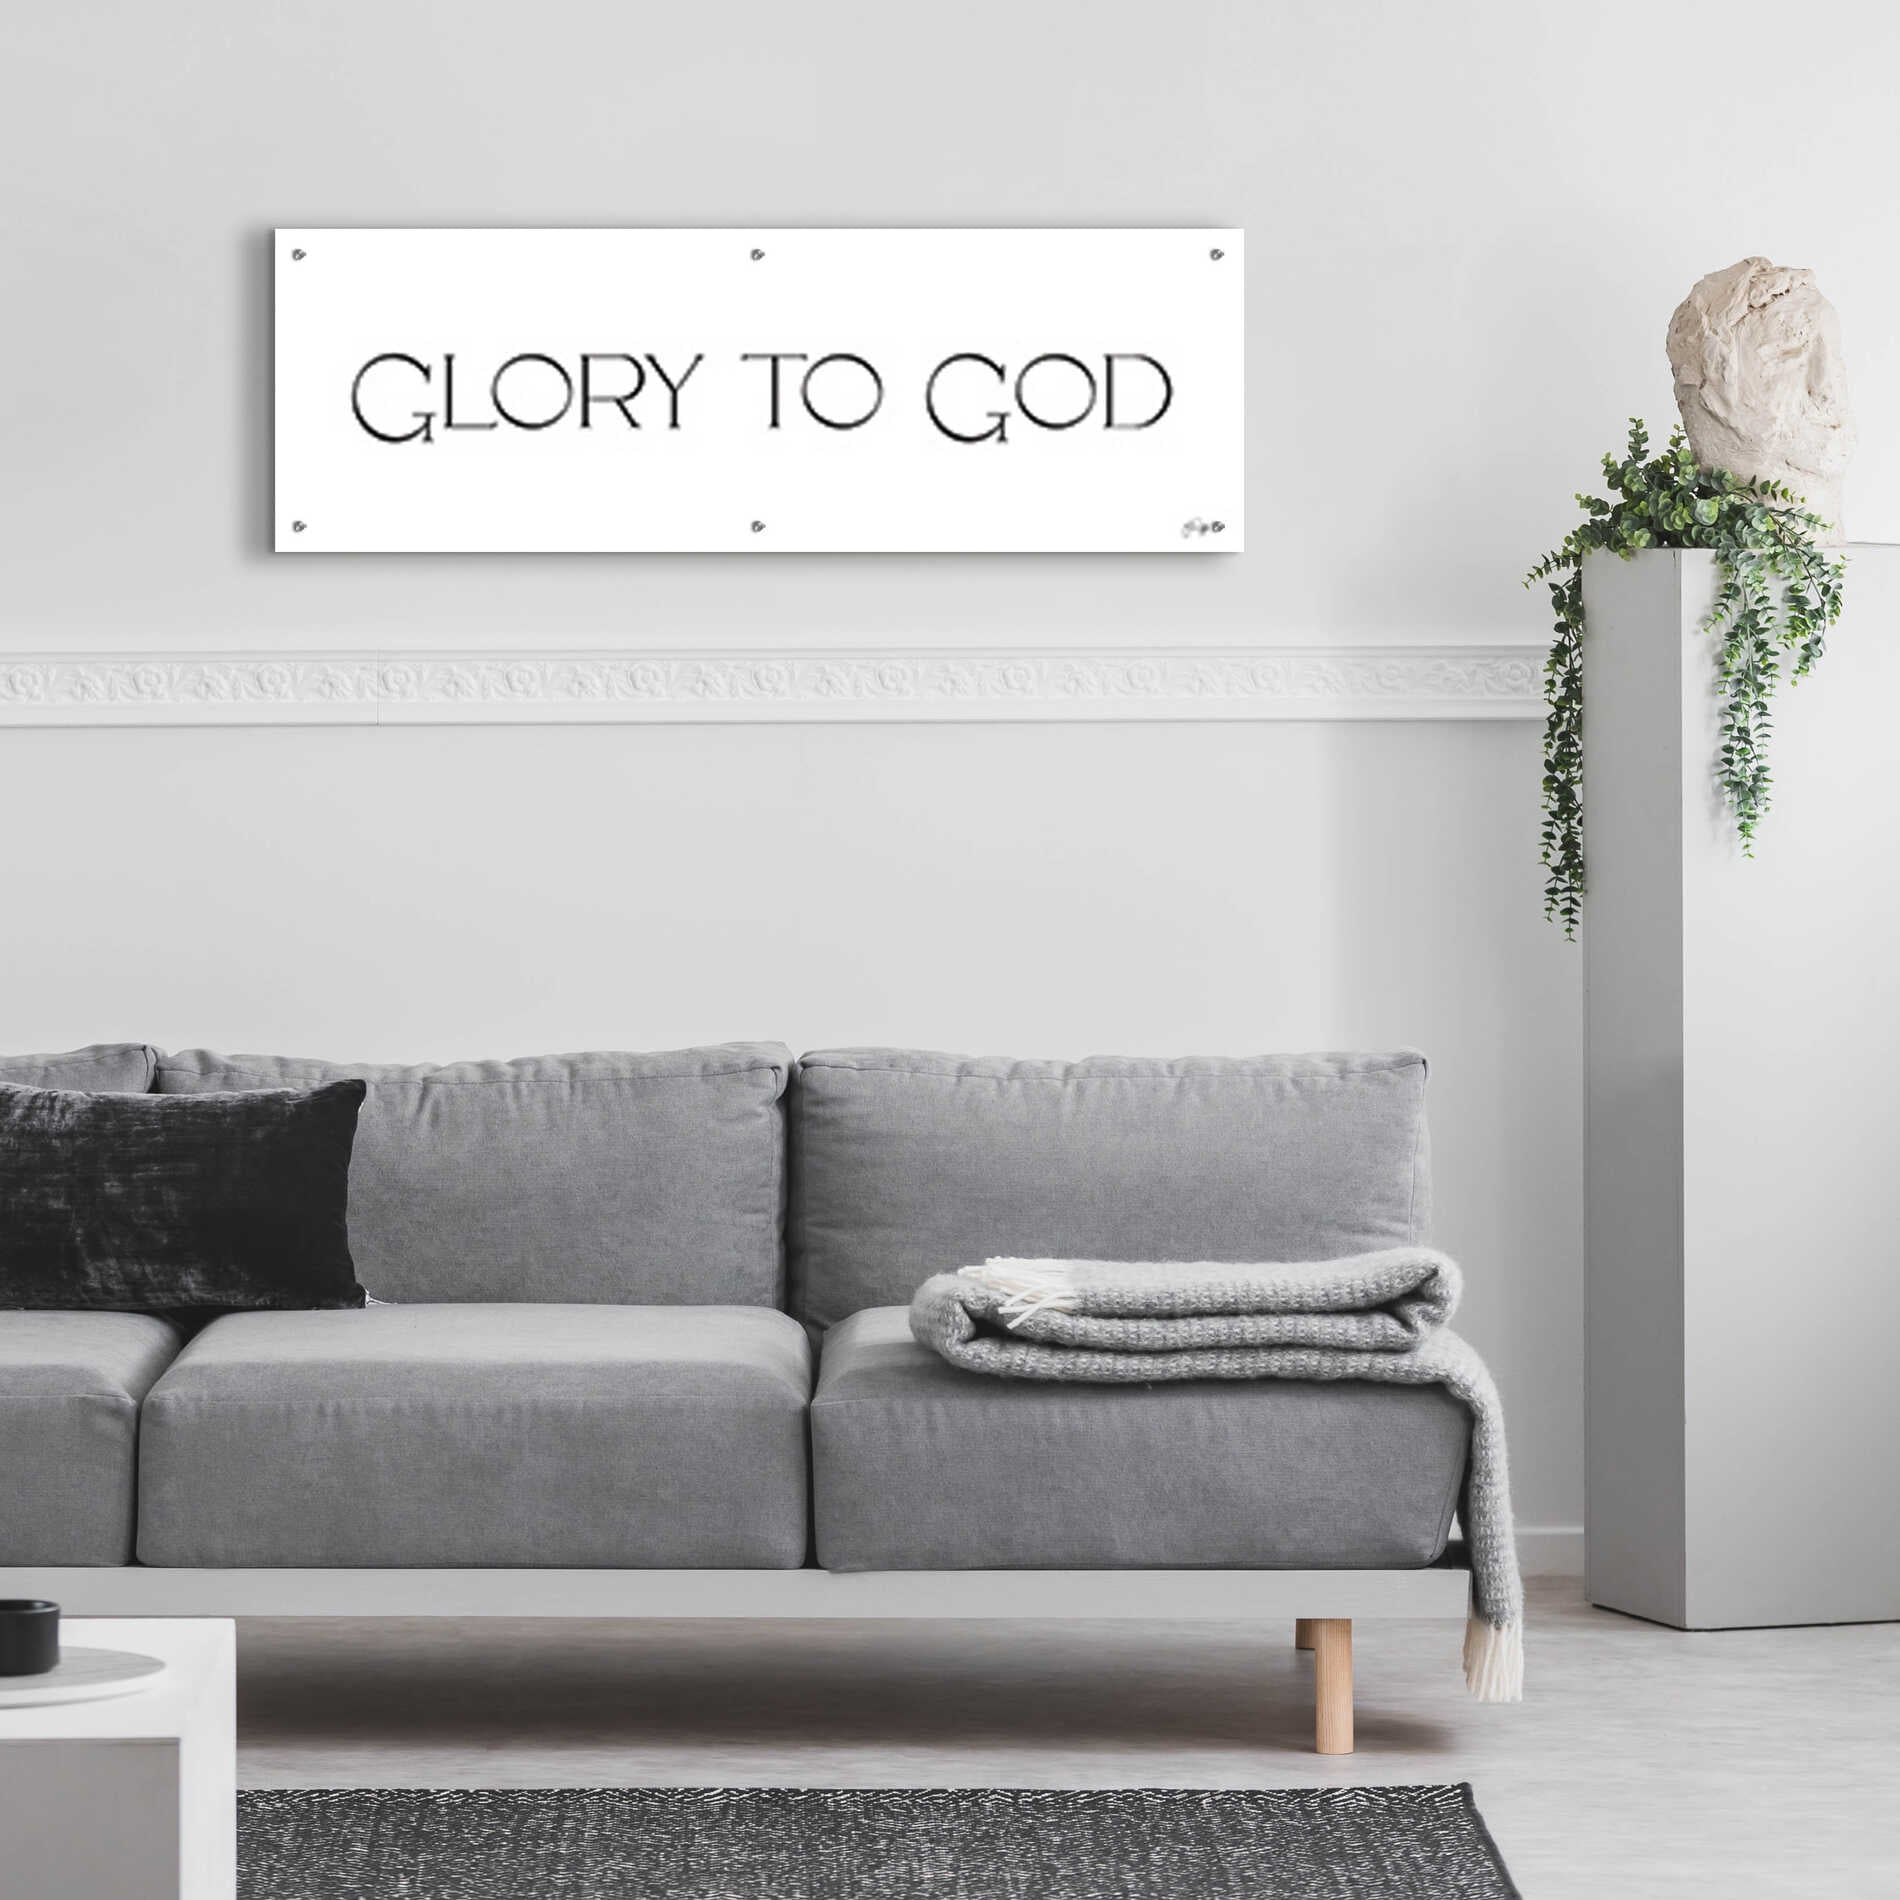 Epic Art 'Glory to God' by Yass Naffas Designs, Acrylic Glass Wall Art,48x16